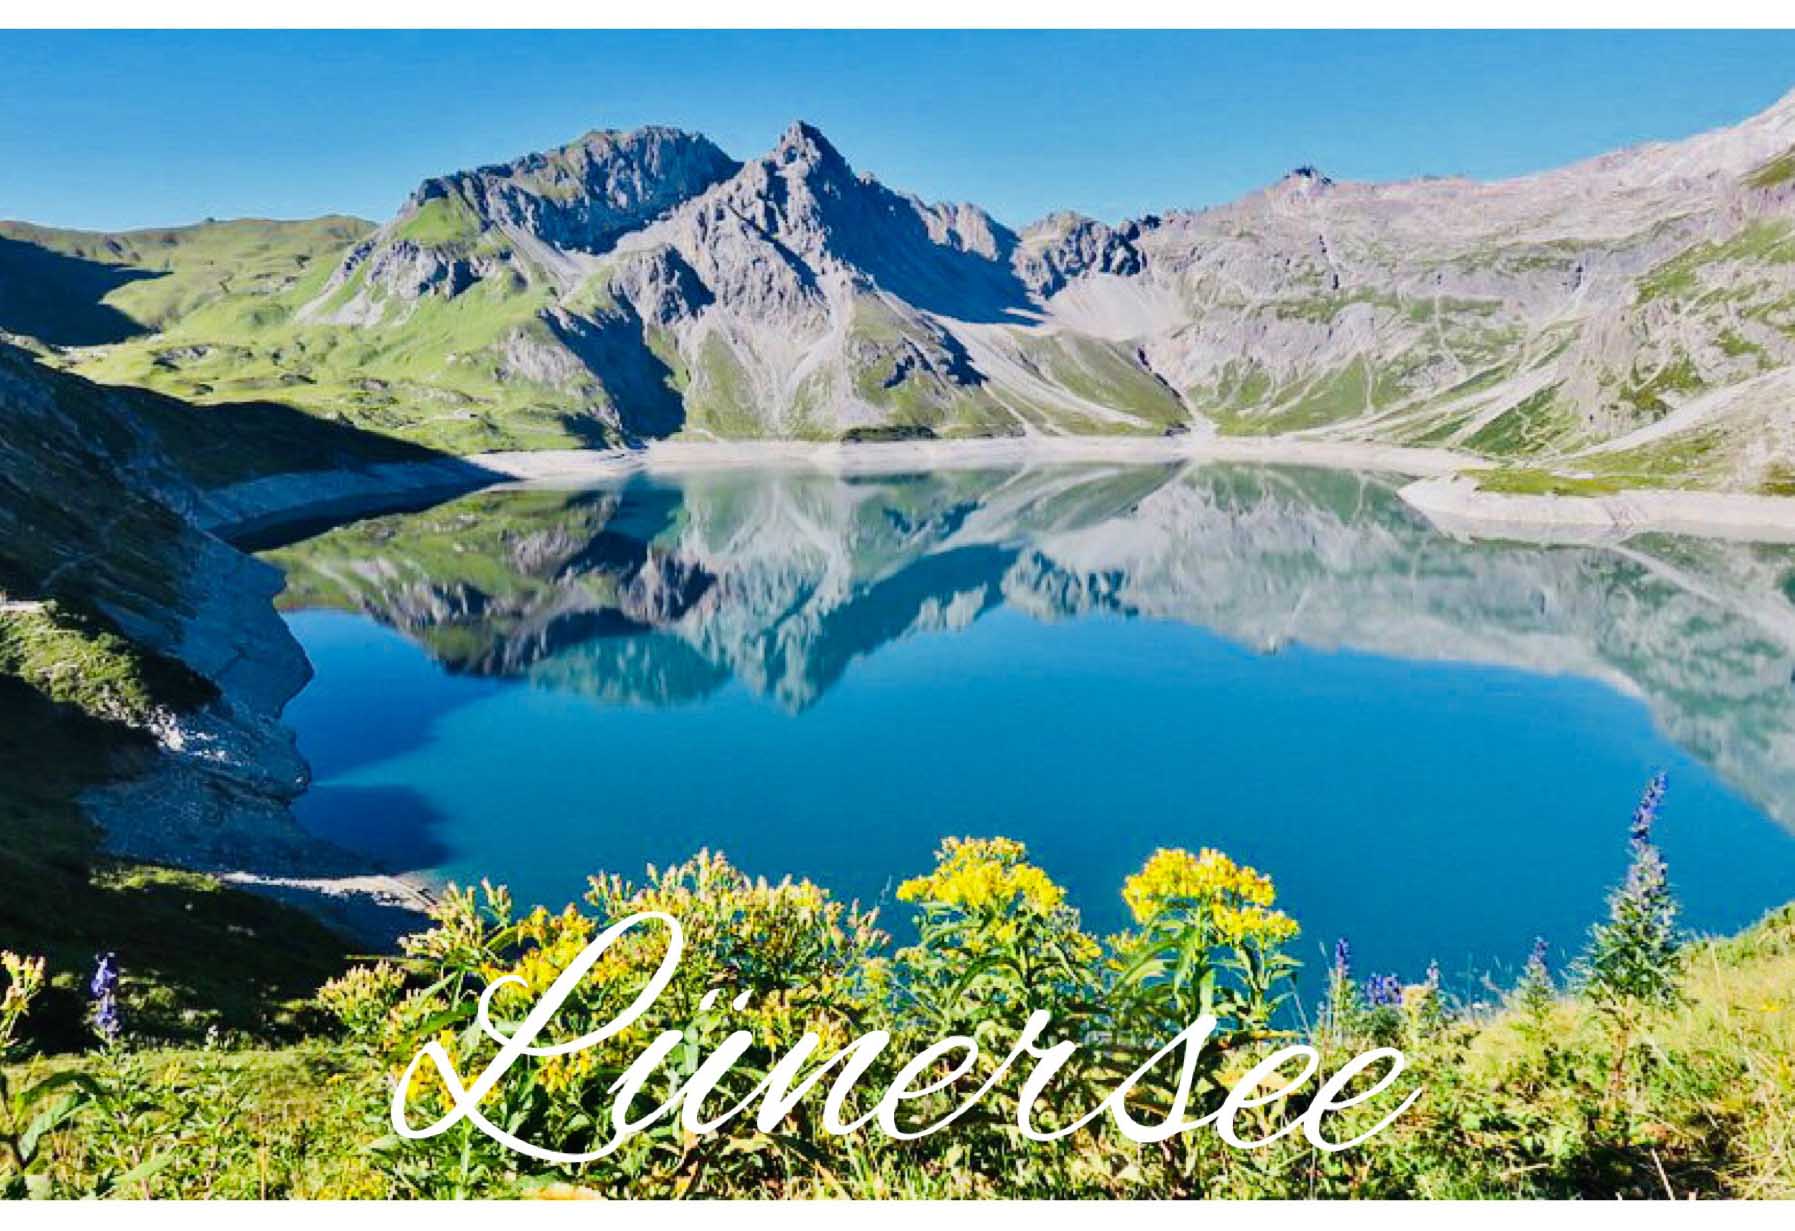 280 Der Lünersee ist einer der größten Seen im österreichischen Bundesland Vorarlberg.
Wasserspiegel bei Vollstau: 1970 m ü. A.
Vorarlberg, Österreich